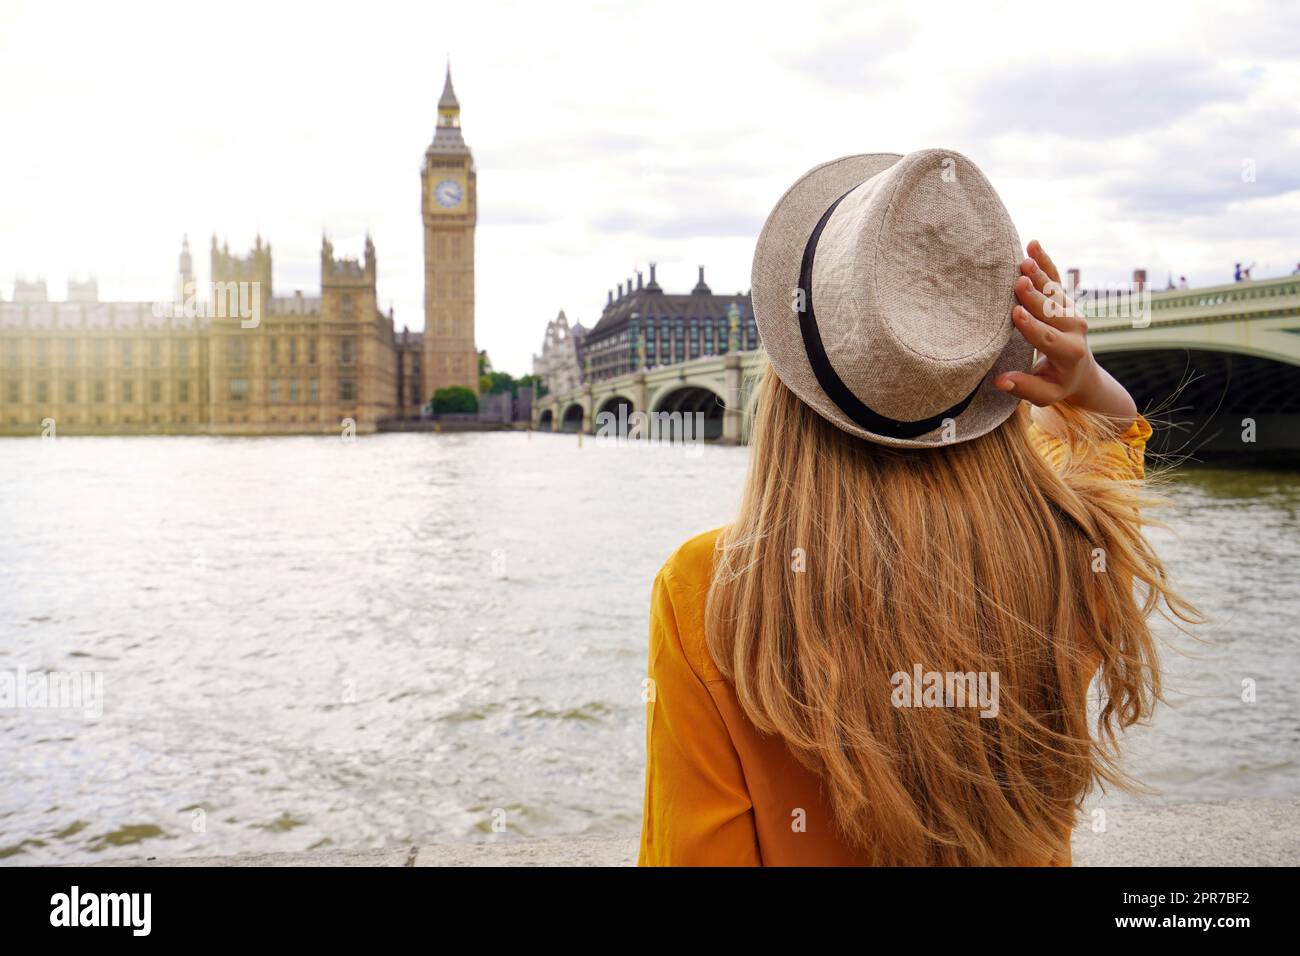 Tourismus in London. Rückansicht einer Touristenfrau, die den Westminster Palast und die Brücke auf der Themse mit dem berühmten Big Ben Turm in London, Großbritannien, bewundern kann. Stockfoto